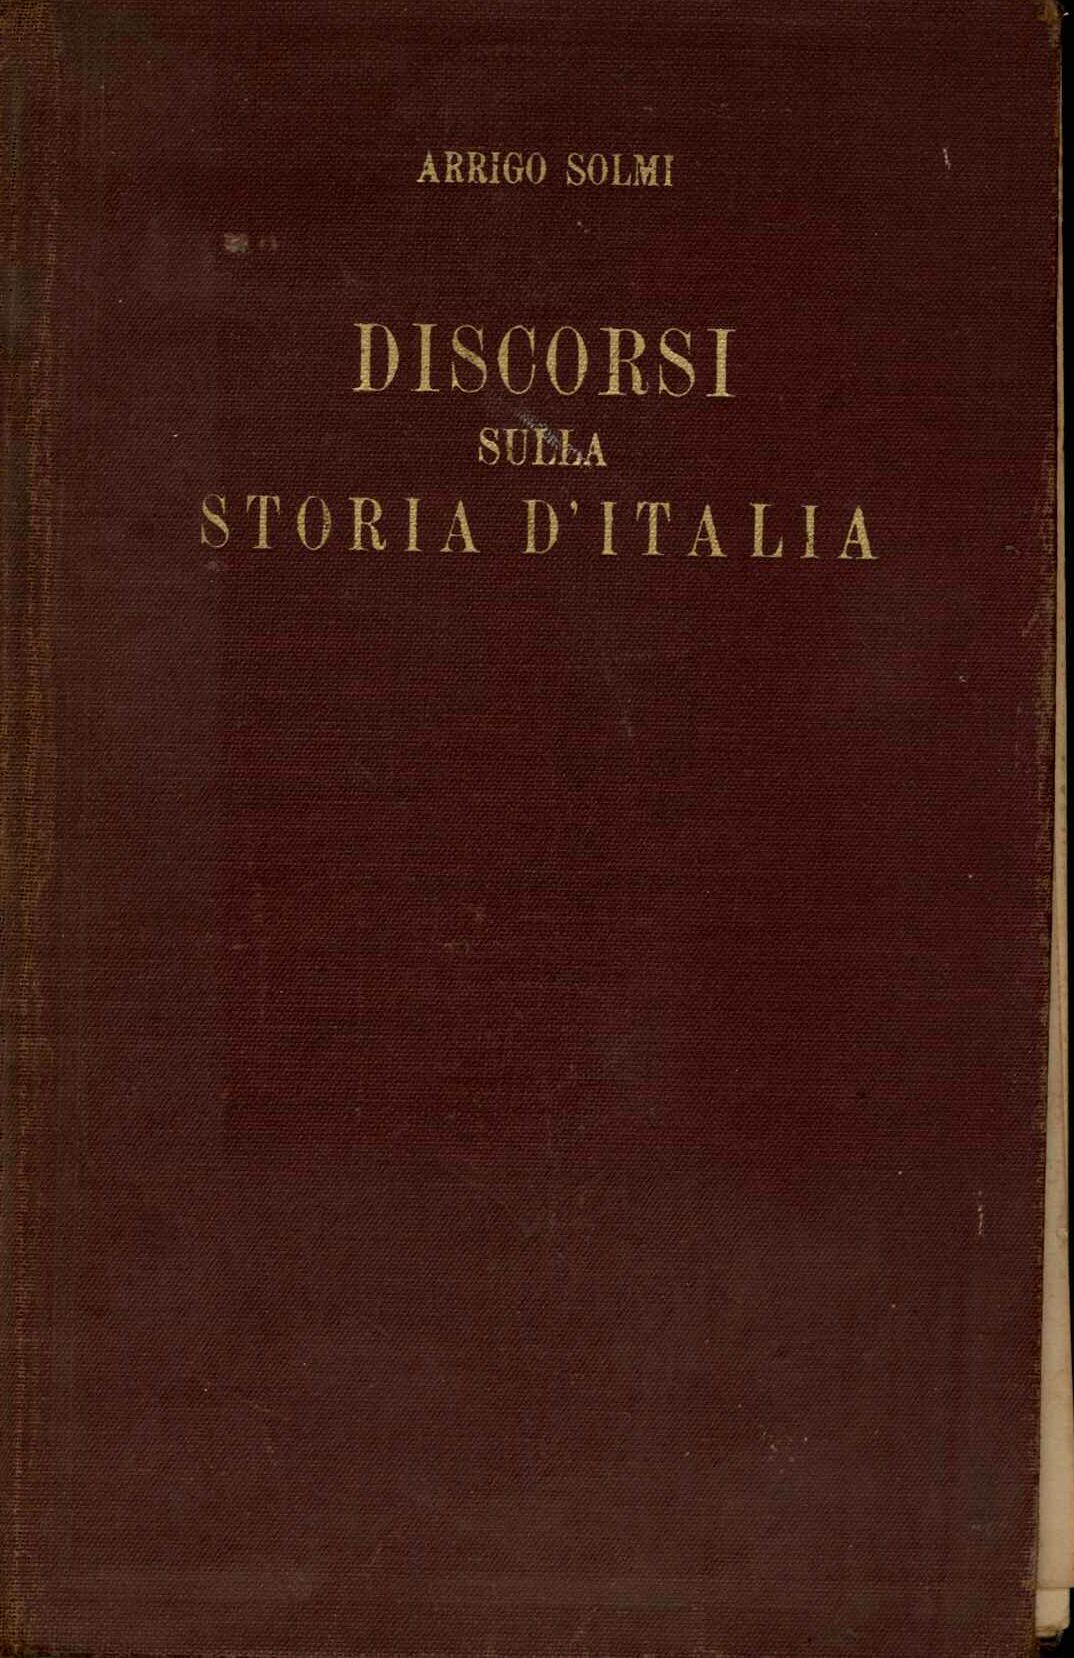 Discorsi sulla storia d'Italia